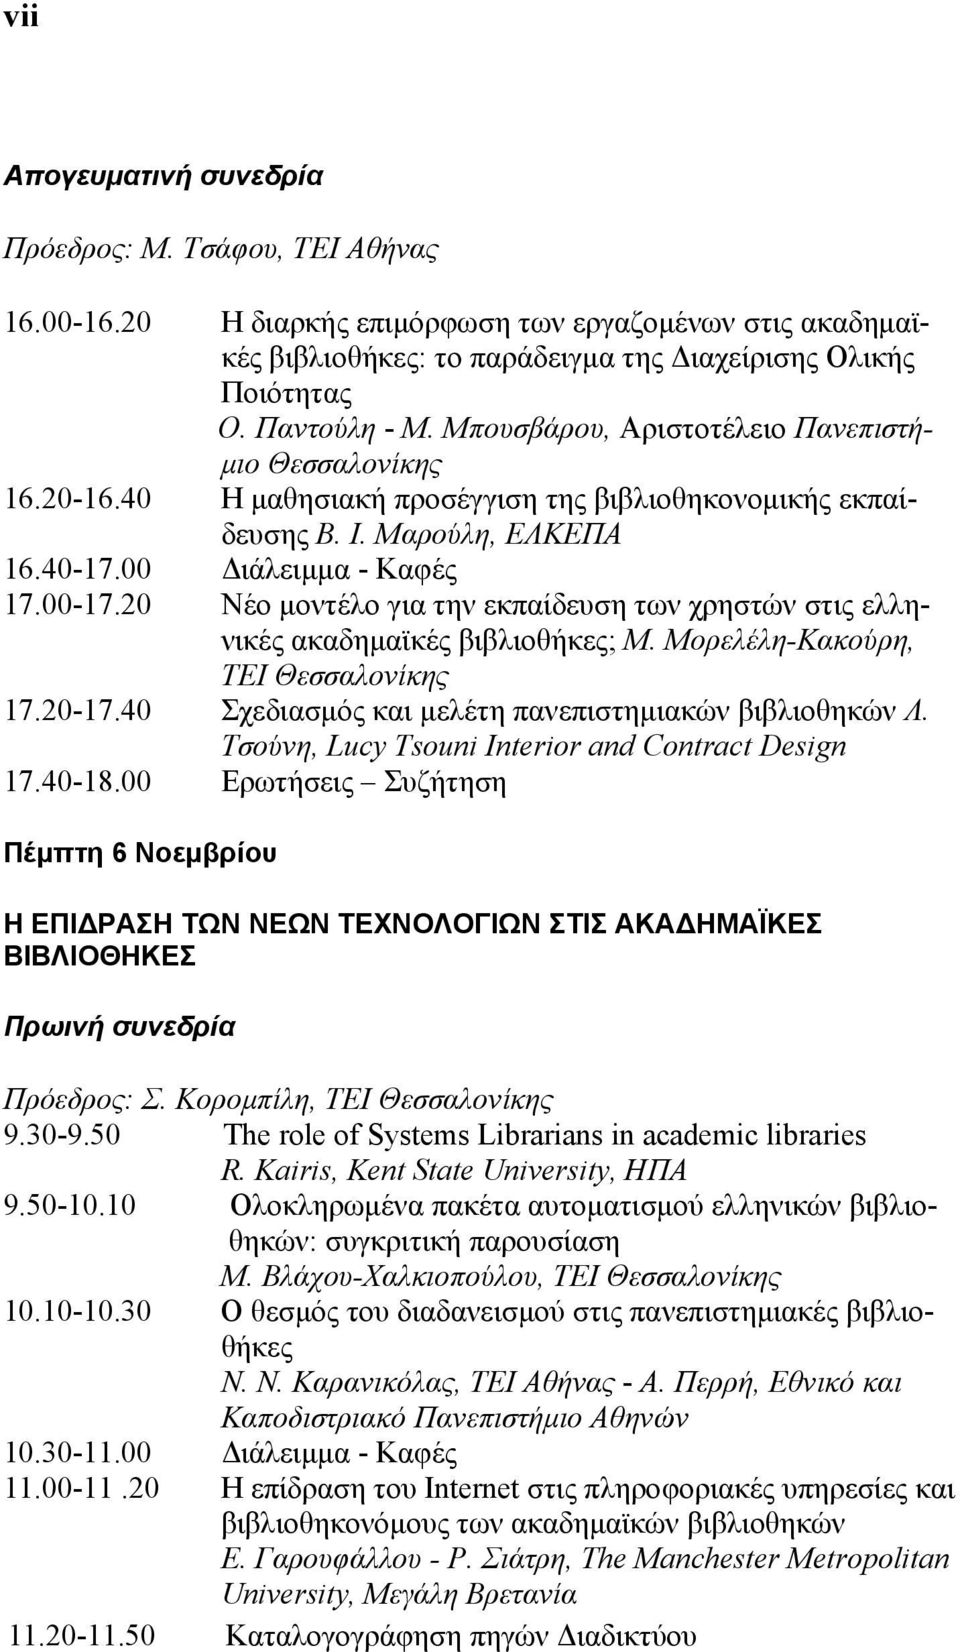 20 Νέο μοντέλο για την εκπαίδευση των χρηστών στις ελληνικές ακαδημαϊκές βιβλιοθήκες; Μ. Μορελέλη-Κακούρη, ΤΕΙ Θεσσαλονίκης 17.20-17.40 Σχεδιασμός και μελέτη πανεπιστημιακών βιβλιοθηκών Λ.